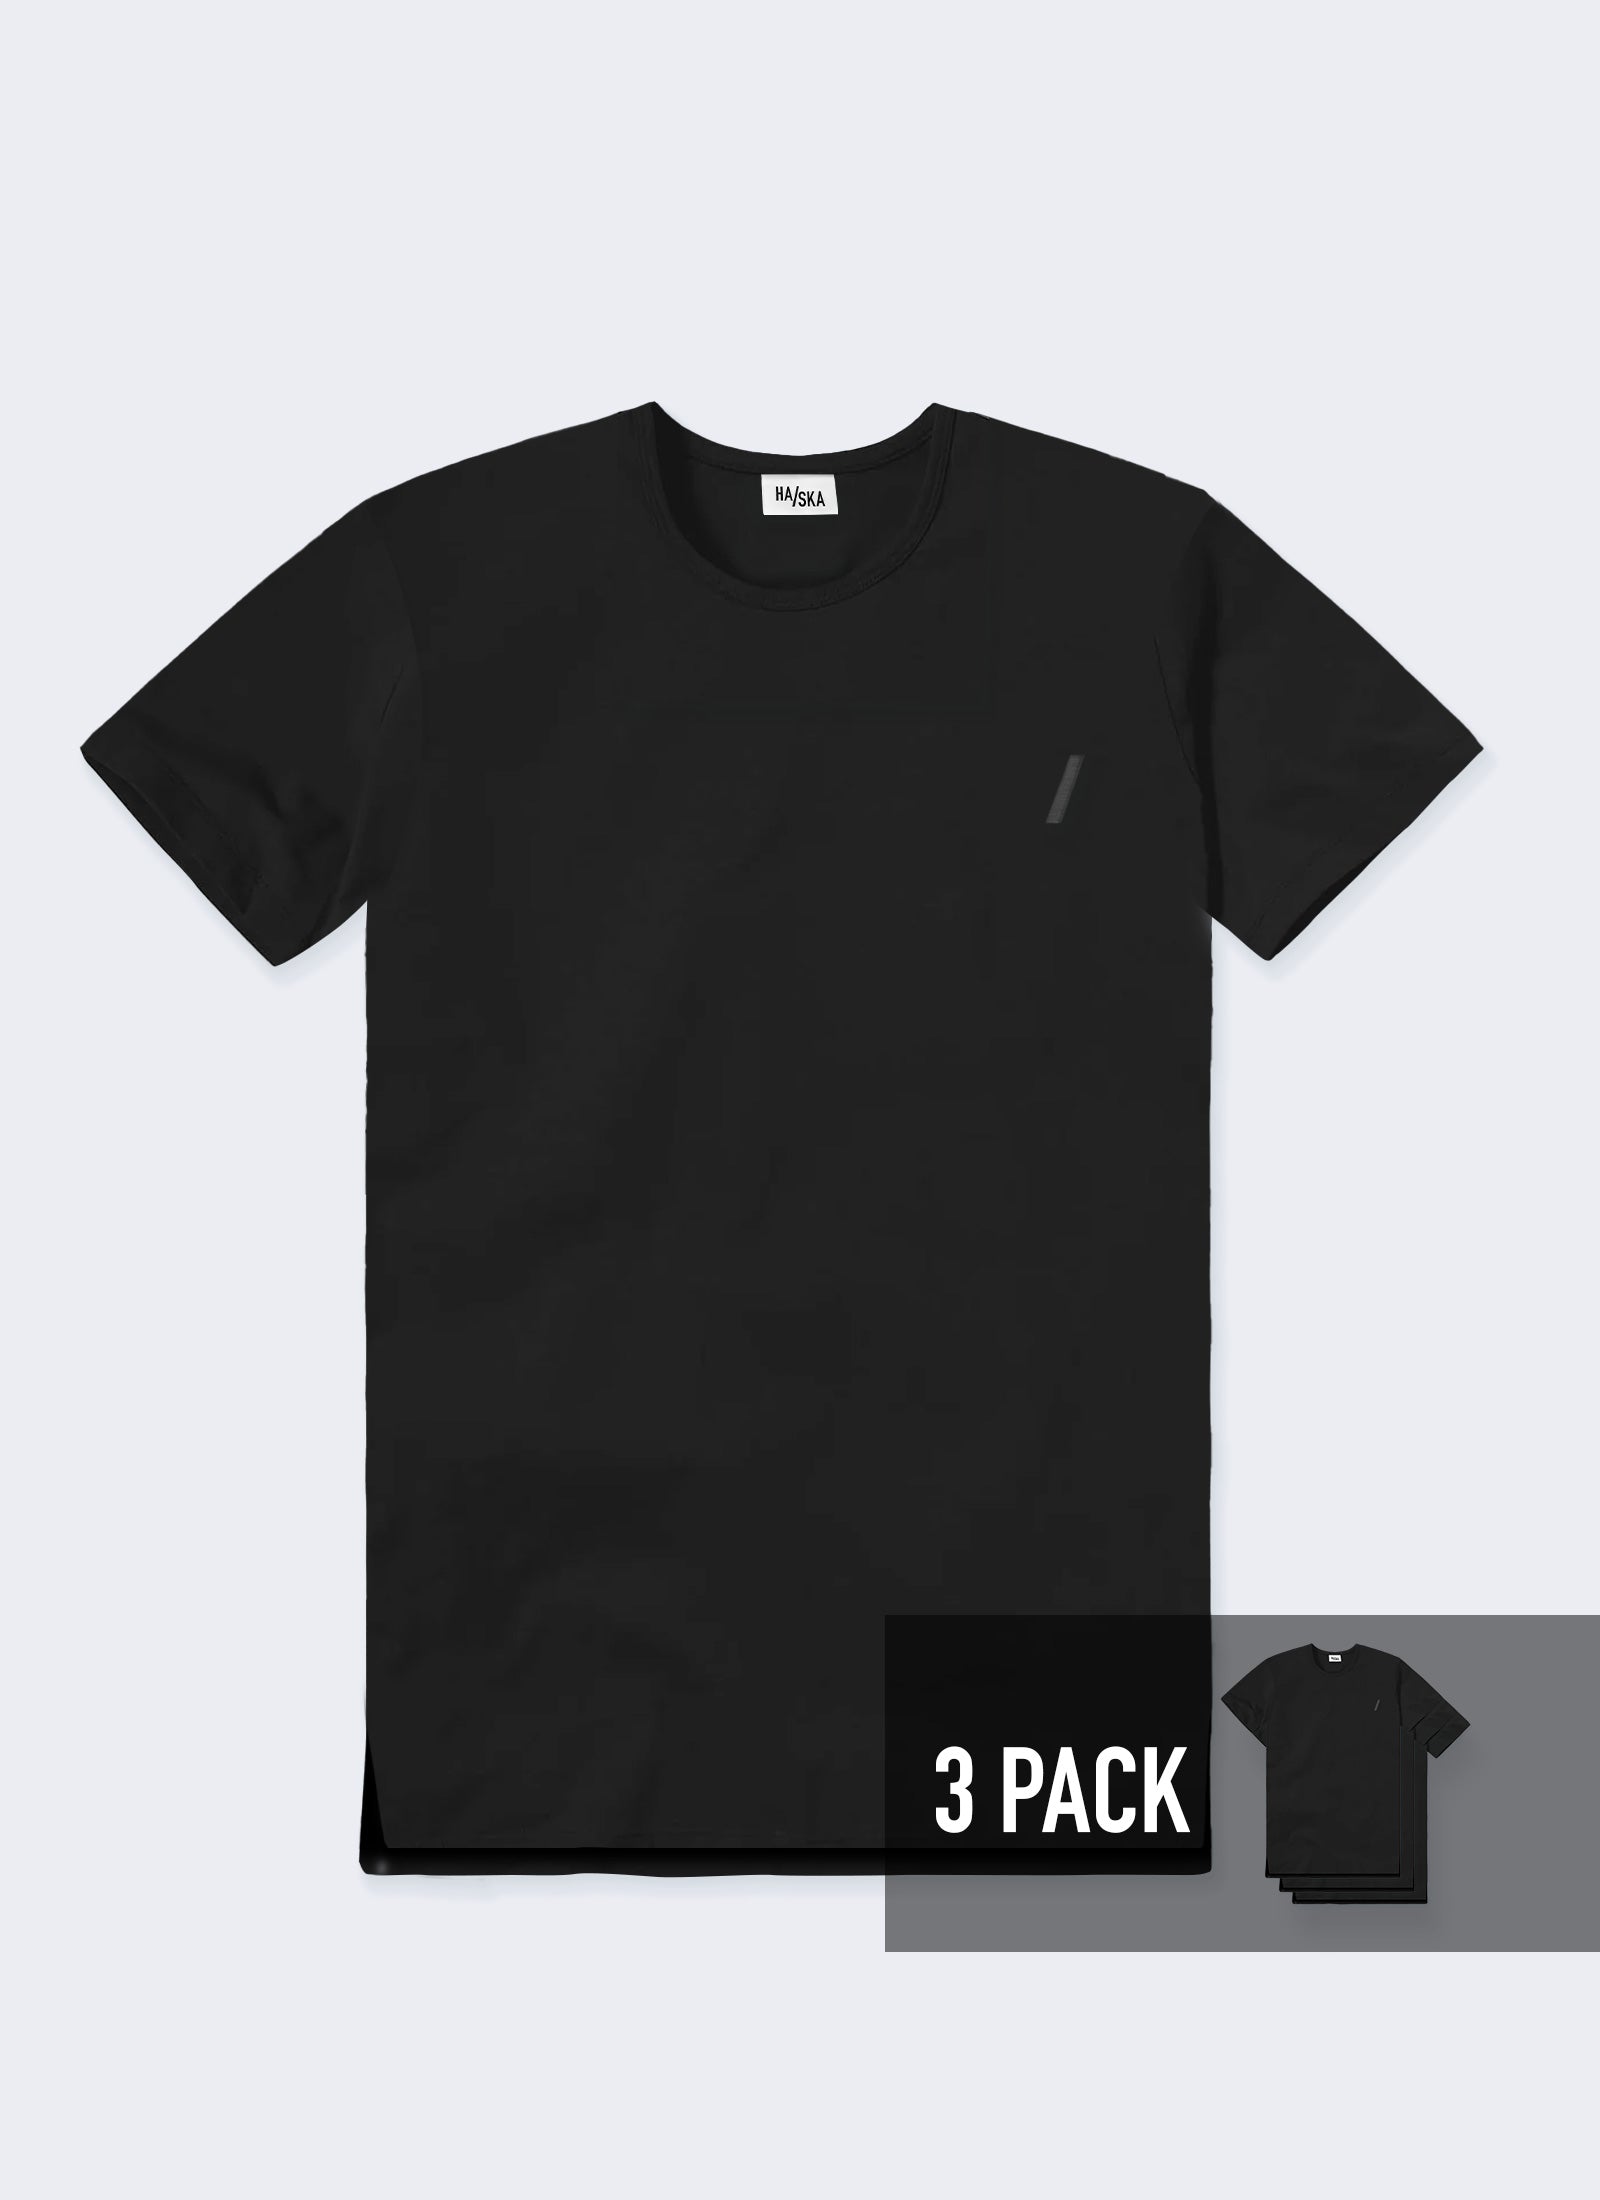 3 PACK / Modern Fit Australian-made Organic T-shirt